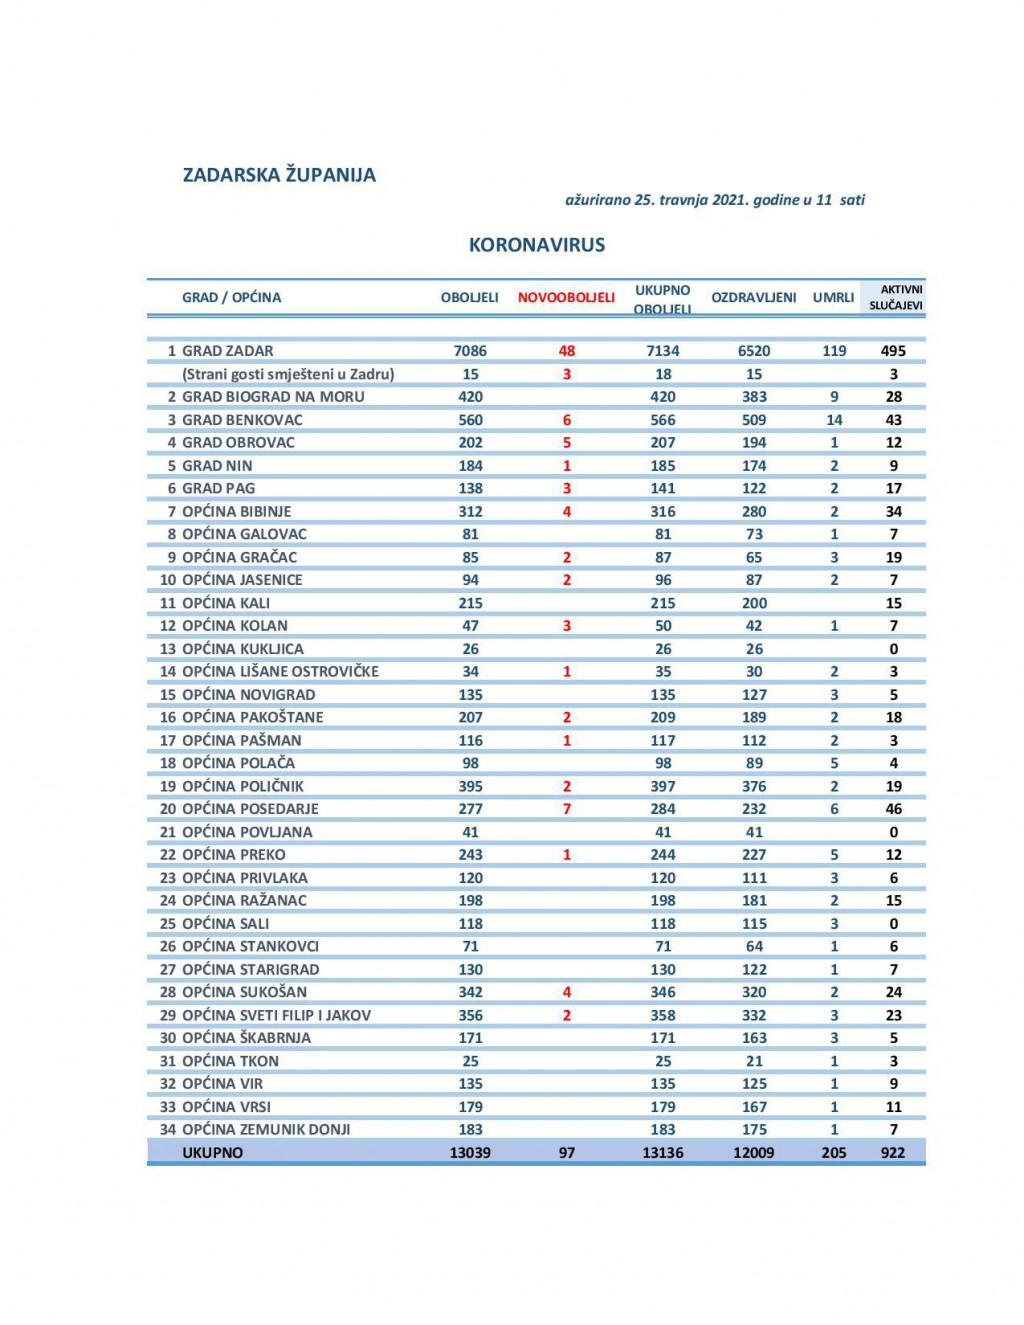 Tablica broja zaraženih po gradovima i općinama u Zadarske županije